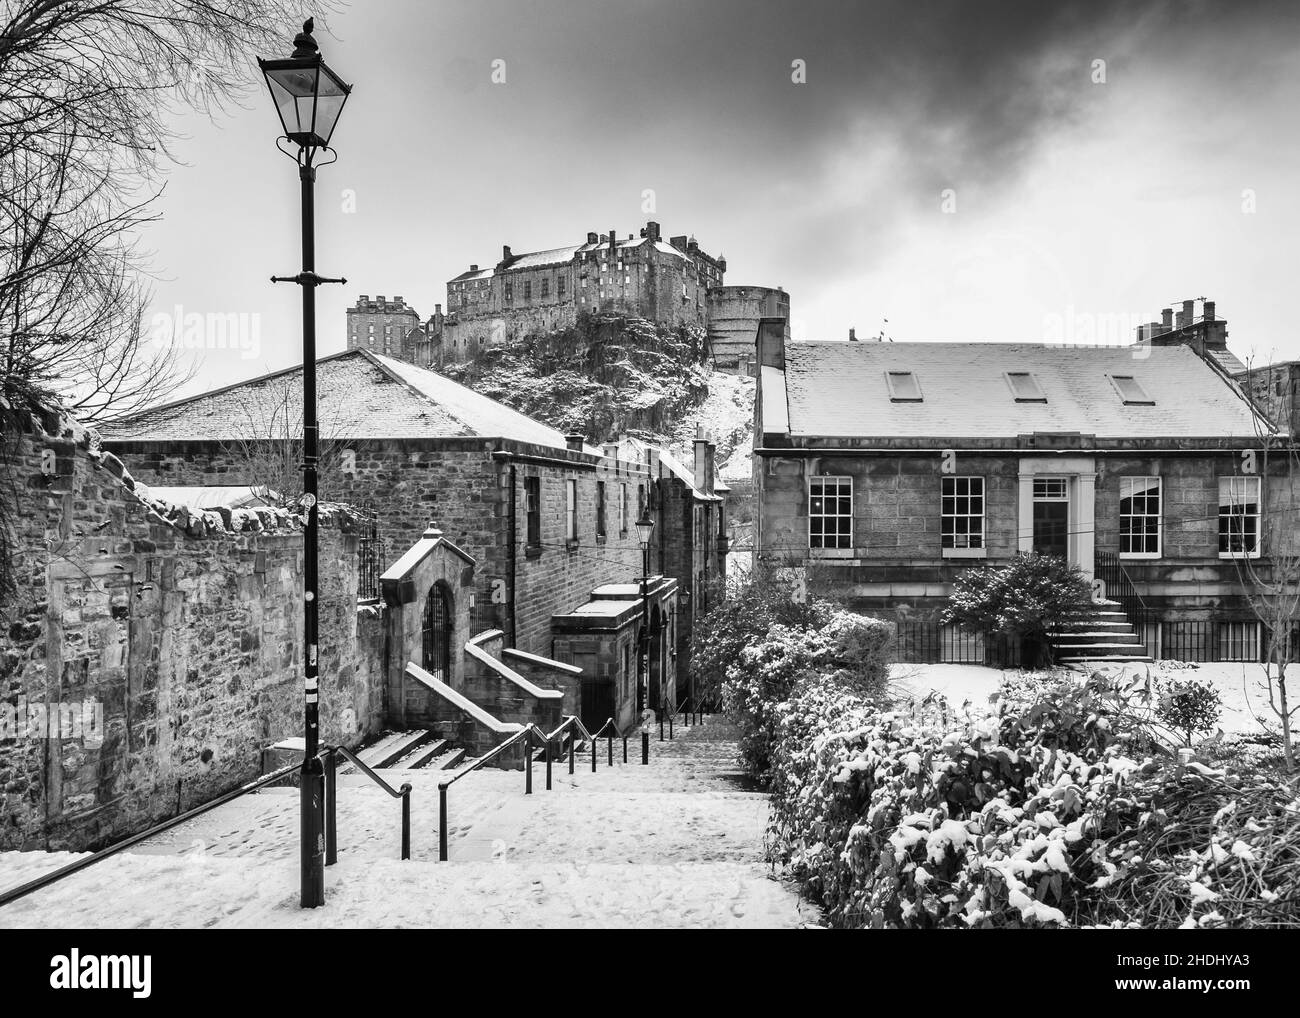 Vue sur le château d'Edimbourg après la neige de l'historique des mesures Vennel à Grassmarket dans la vieille ville d'Édimbourg, Écosse, Royaume-Uni Banque D'Images